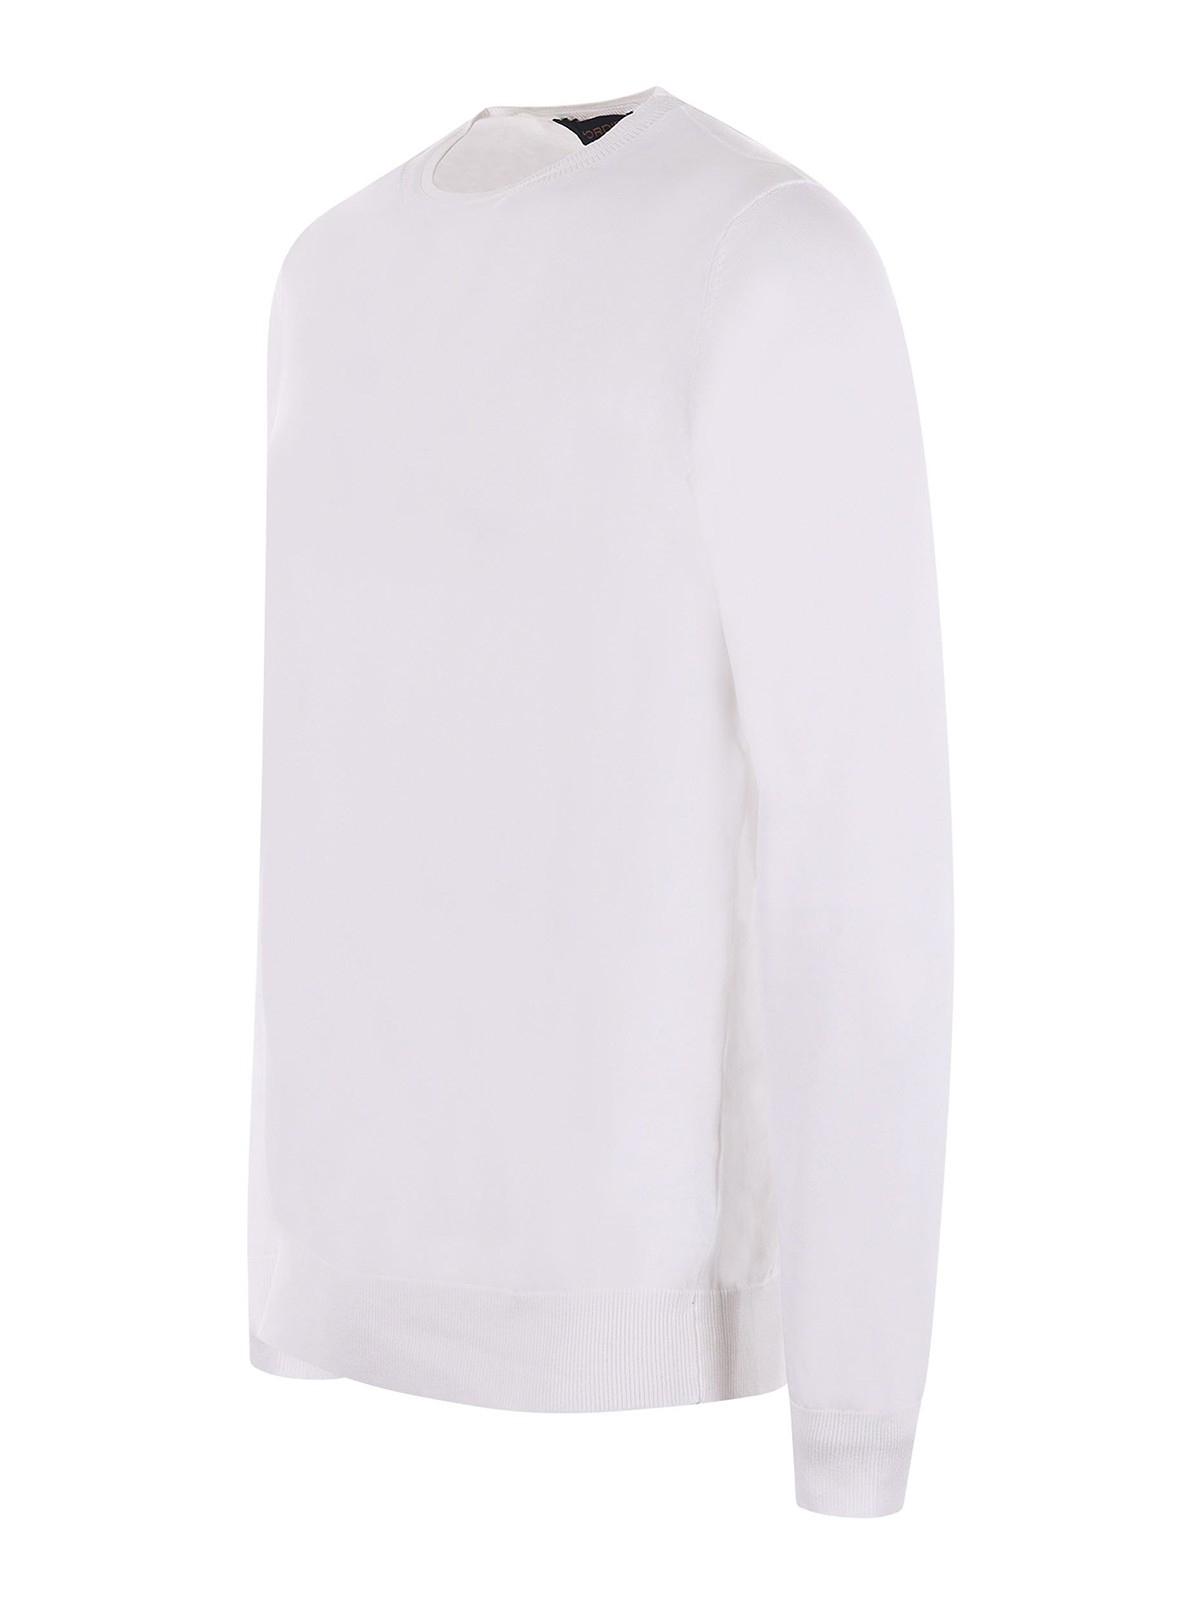 Shop Jeordie's Suéter Cuello Redondo - Blanco In White